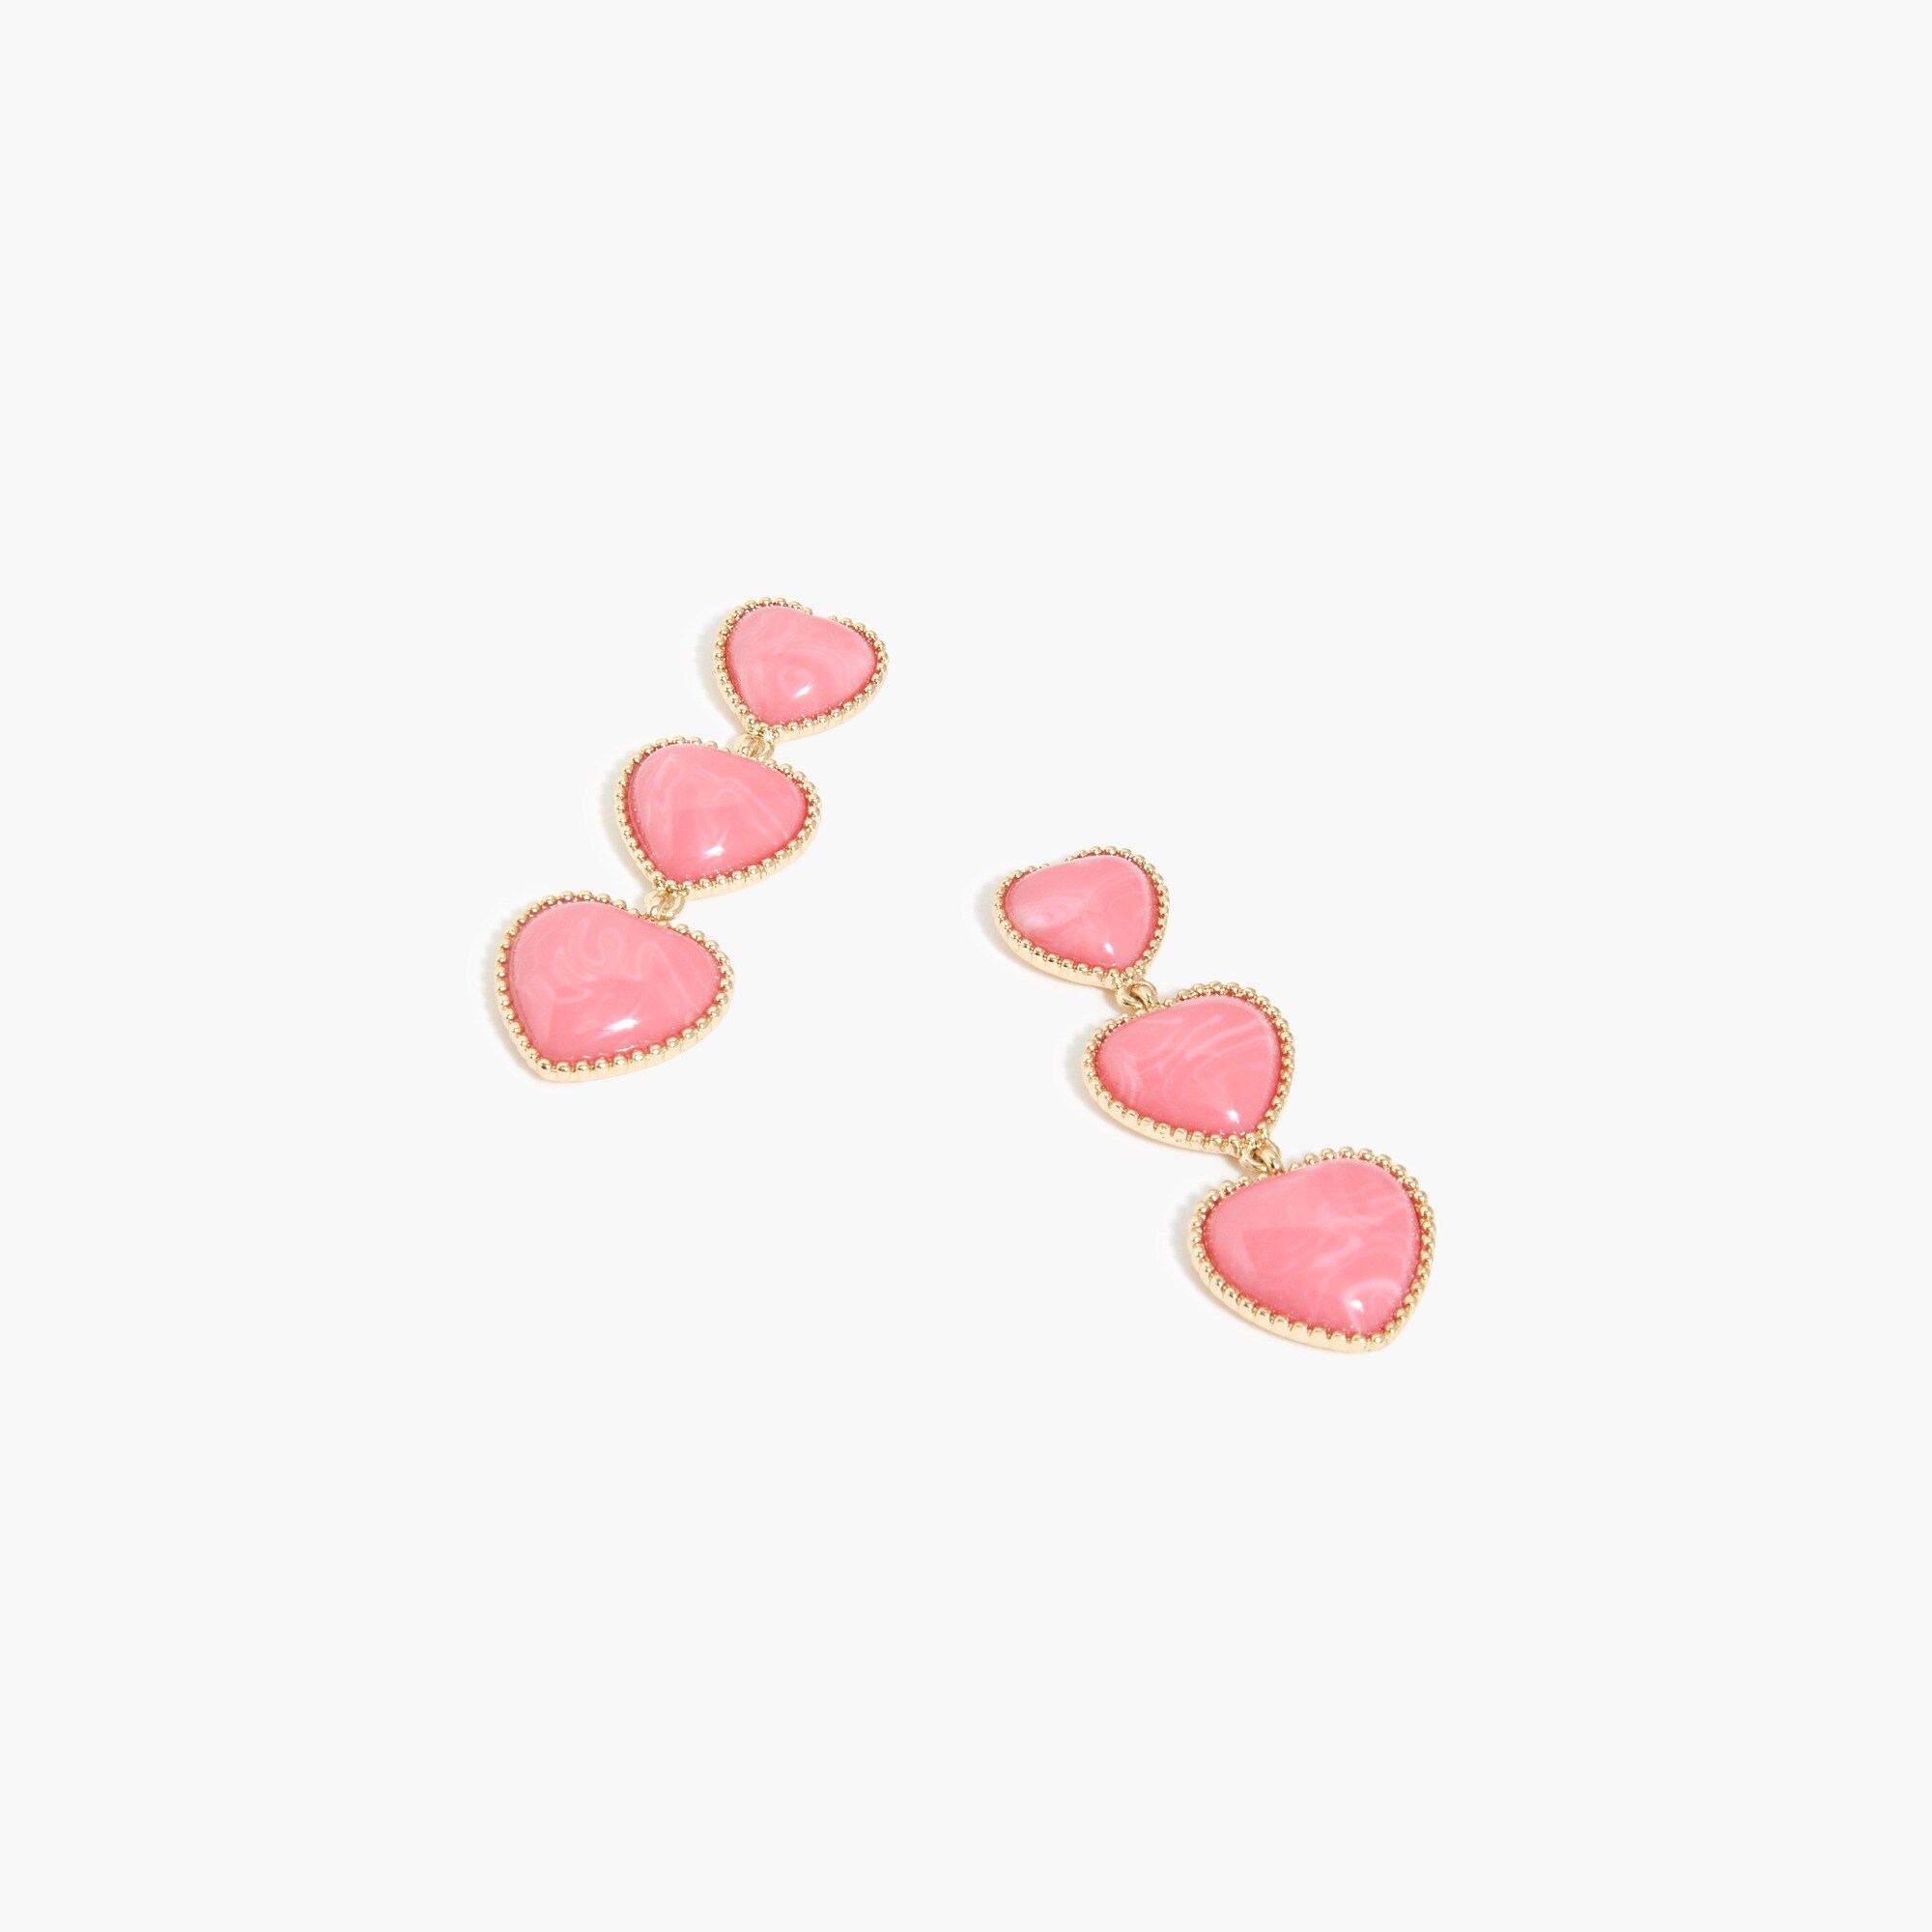  Heart drop earrings